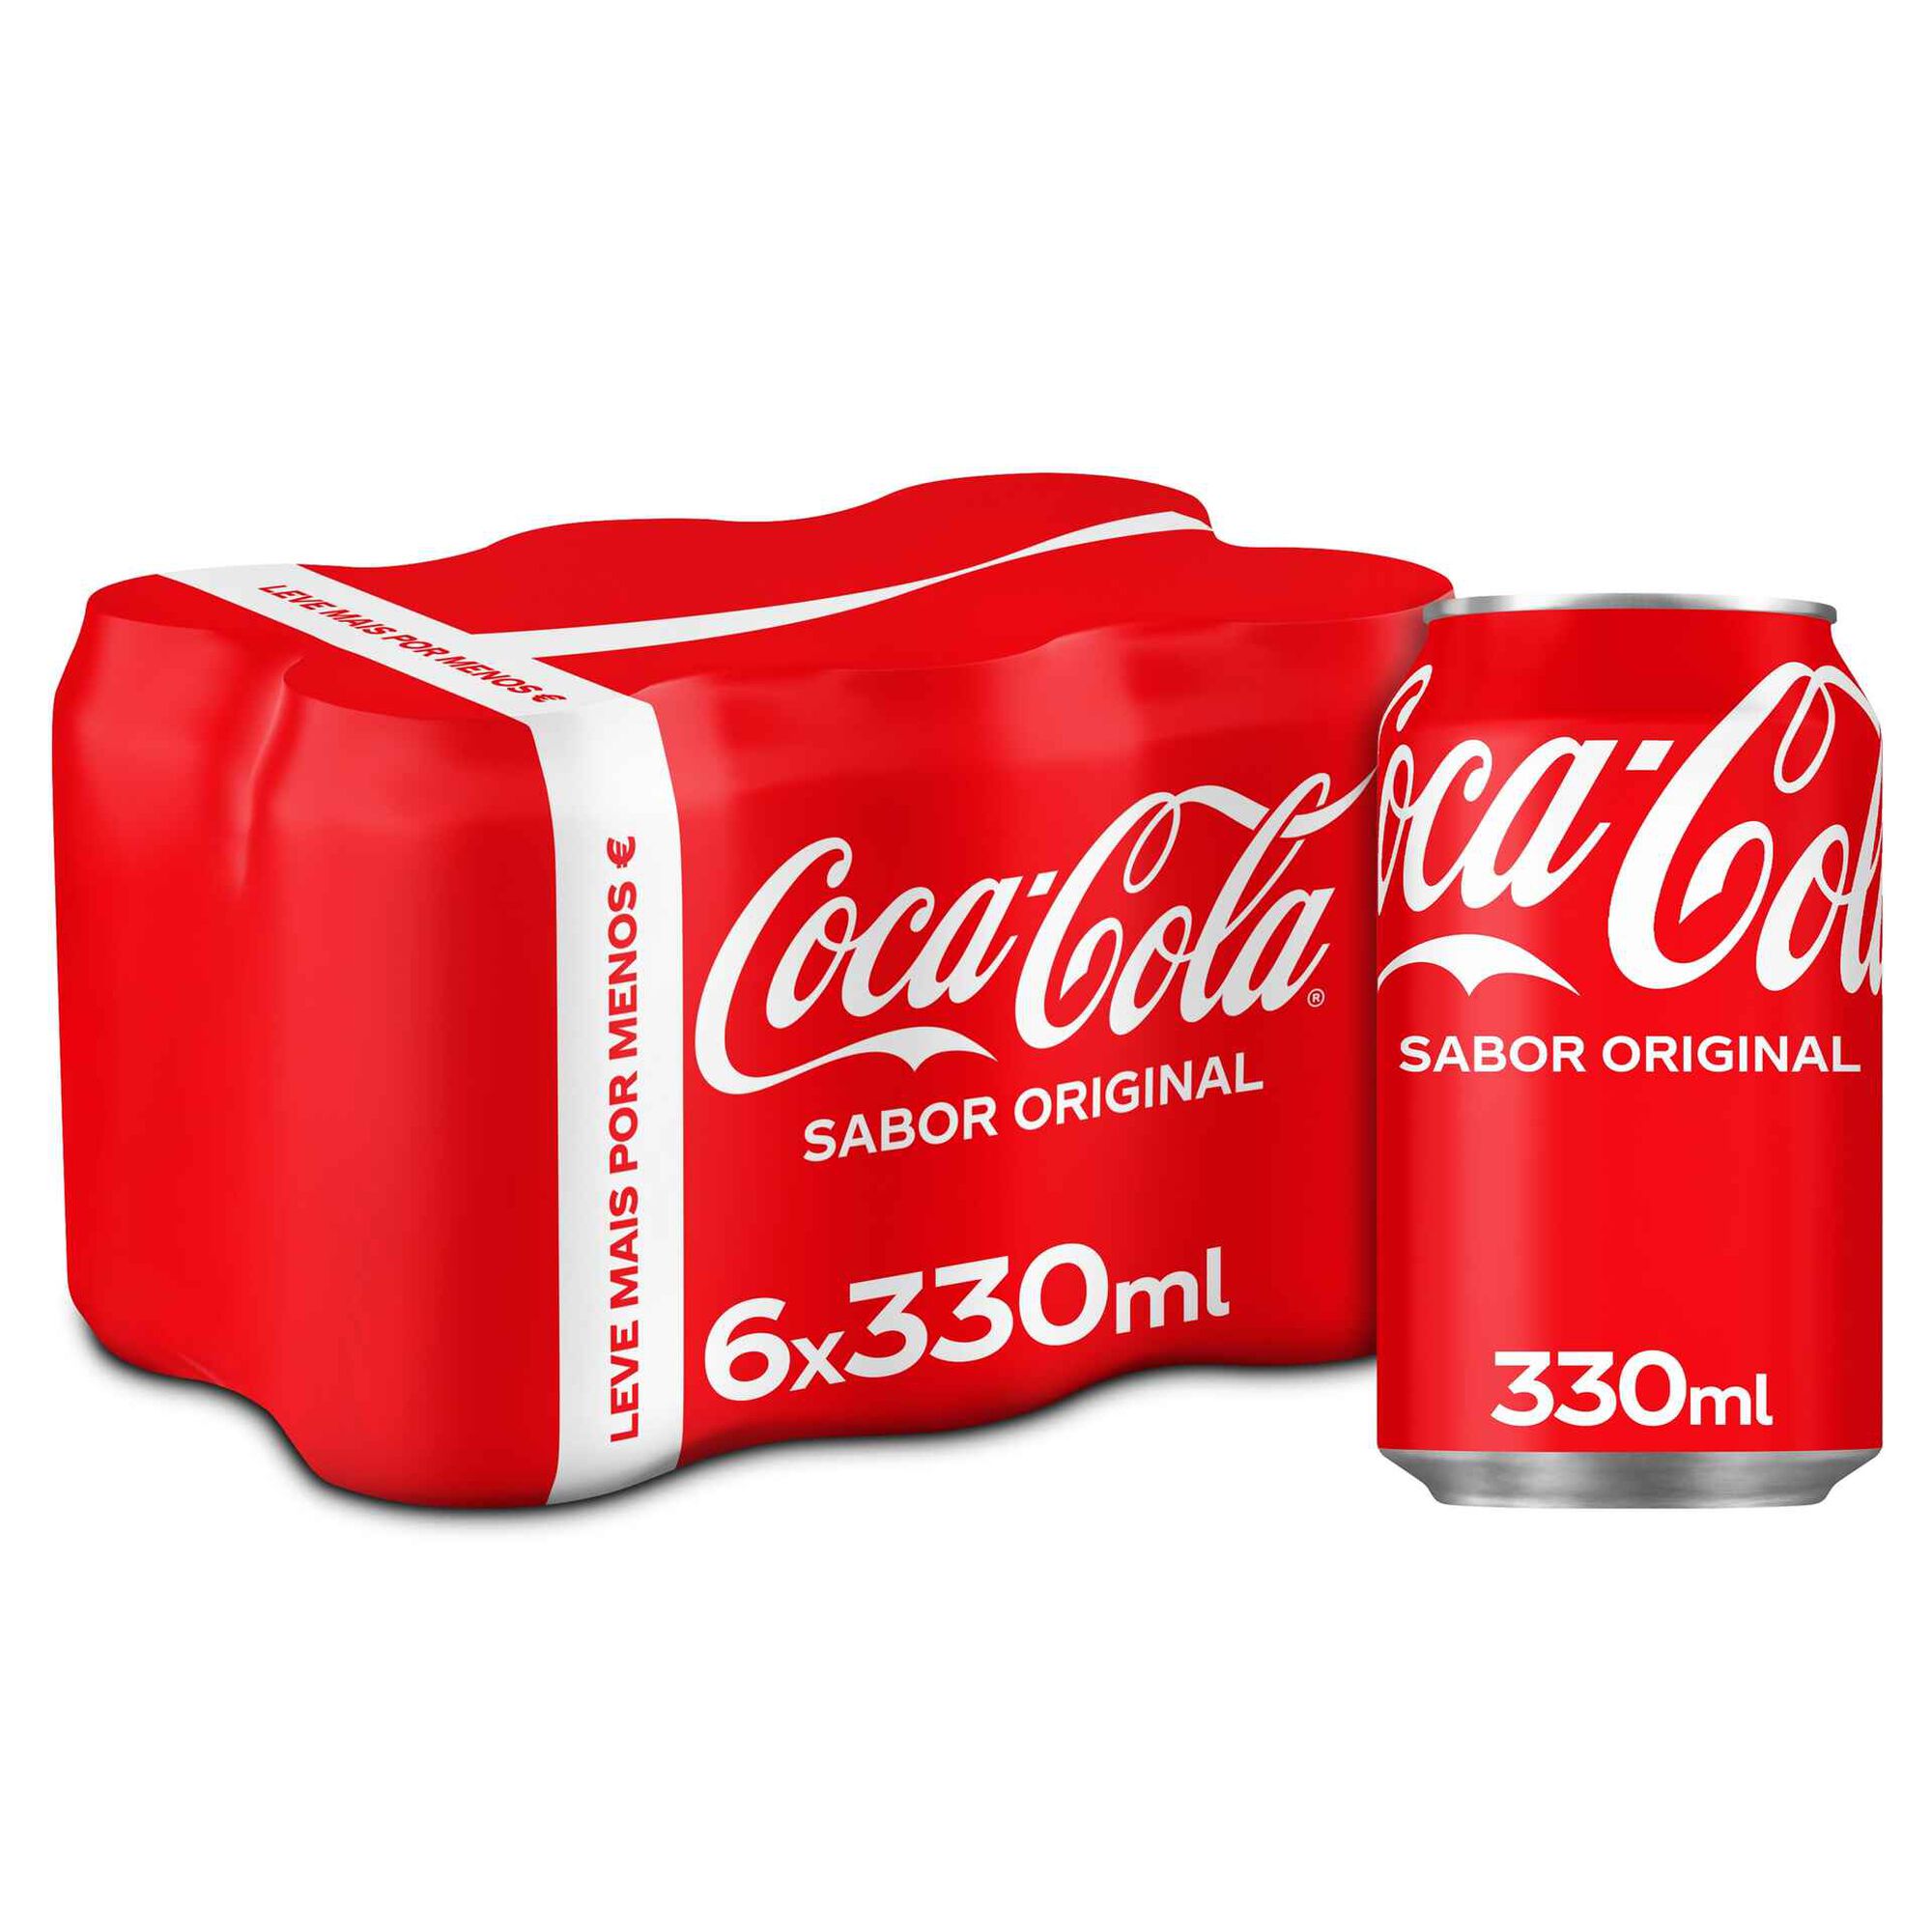 Refrigerante com Gás Cola